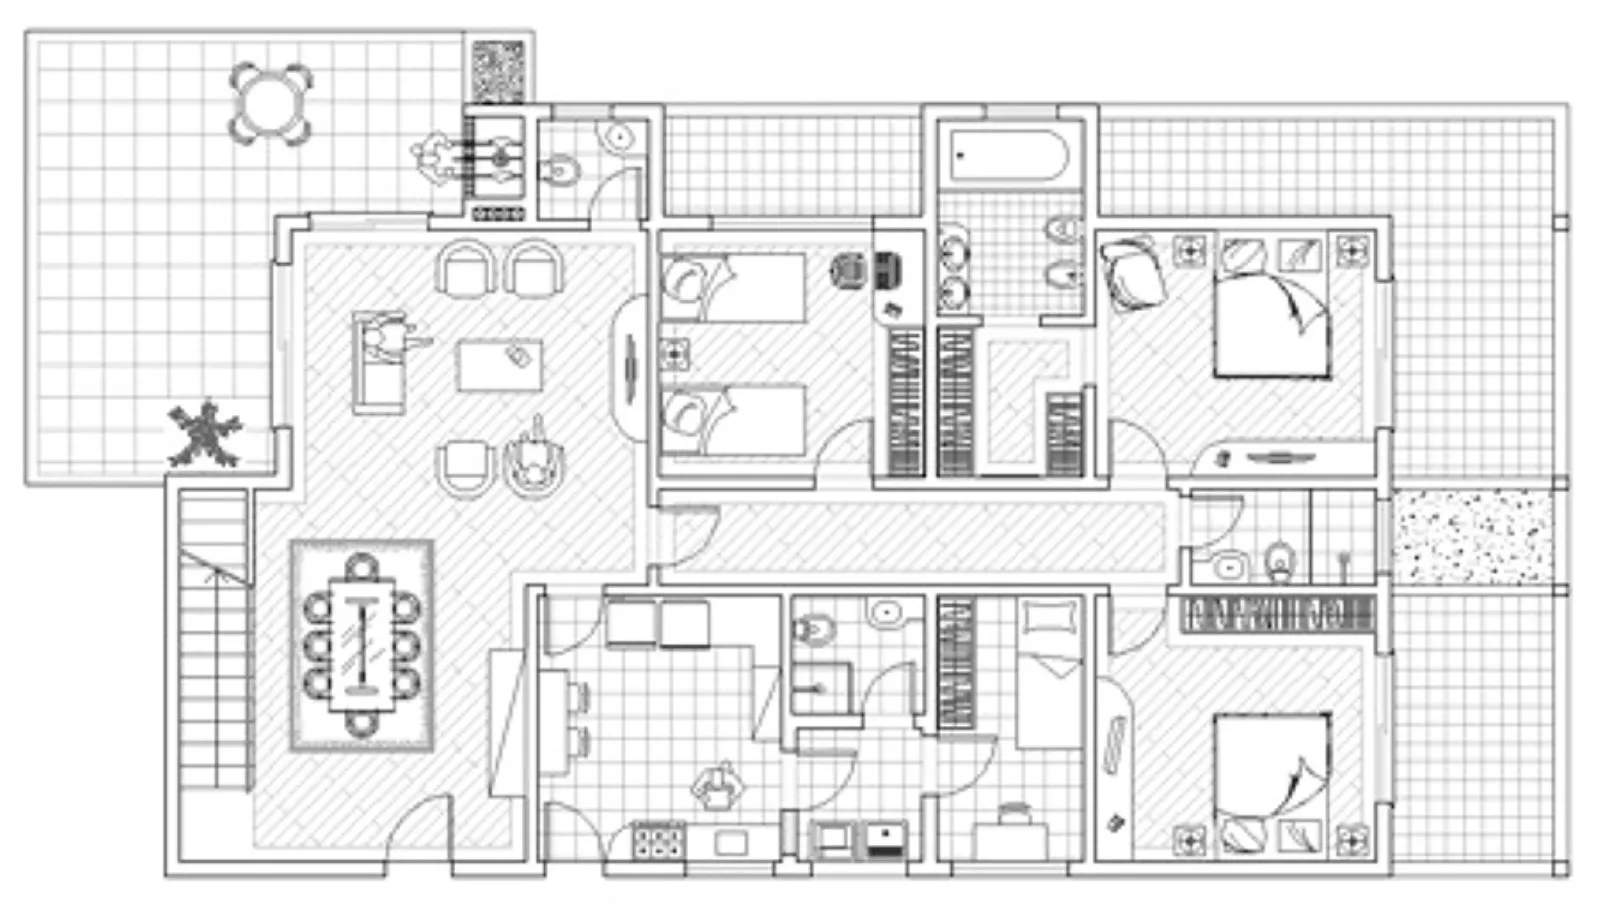 Planimetria casa come realizzarla progettazione casa for Progettare case in 3d